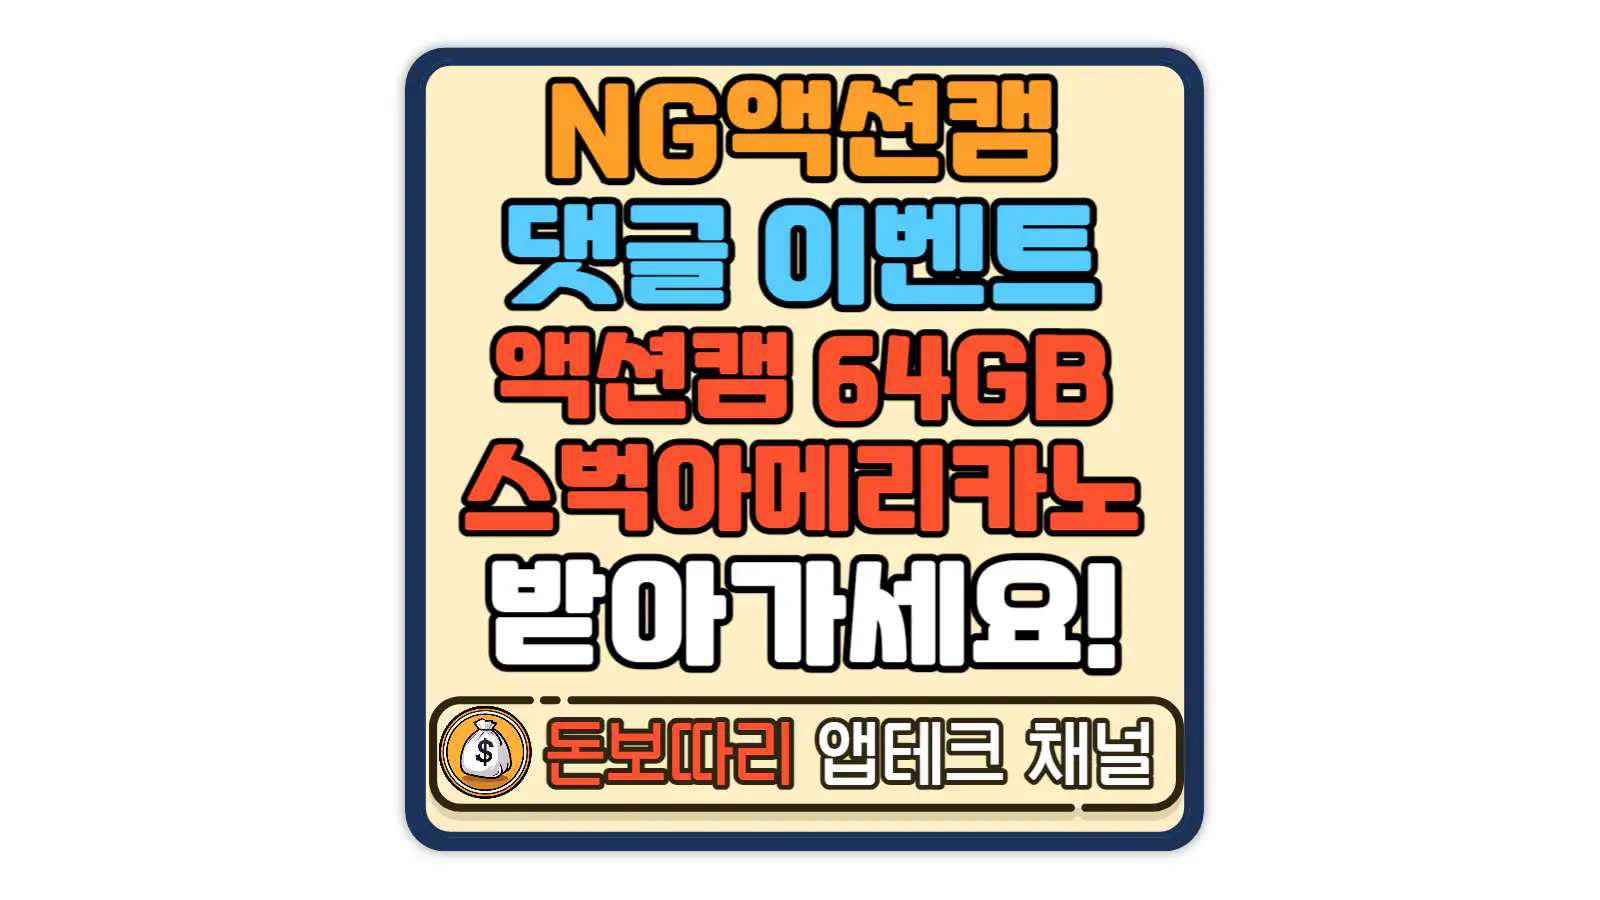 NG액션캠-댓글-이벤트